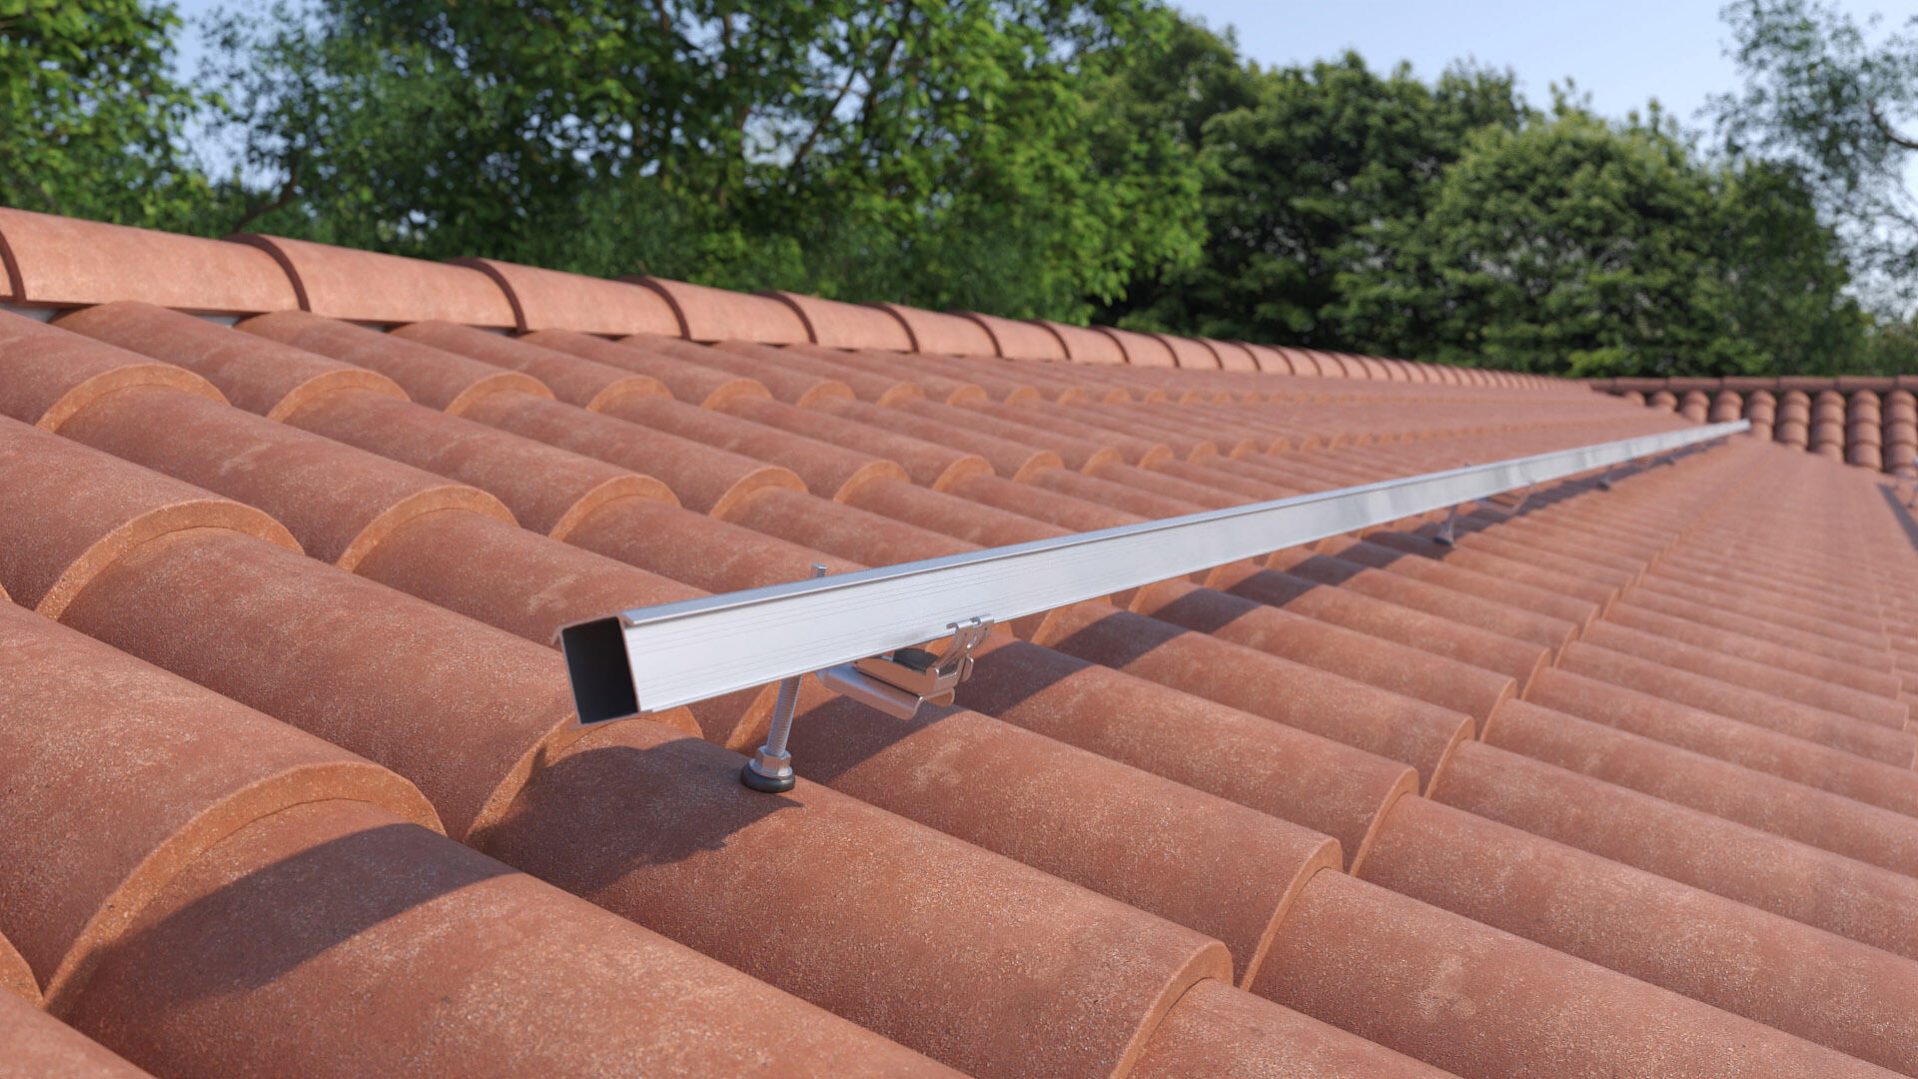 Comment fixer des panneaux solaires sur un toit en tuiles ?